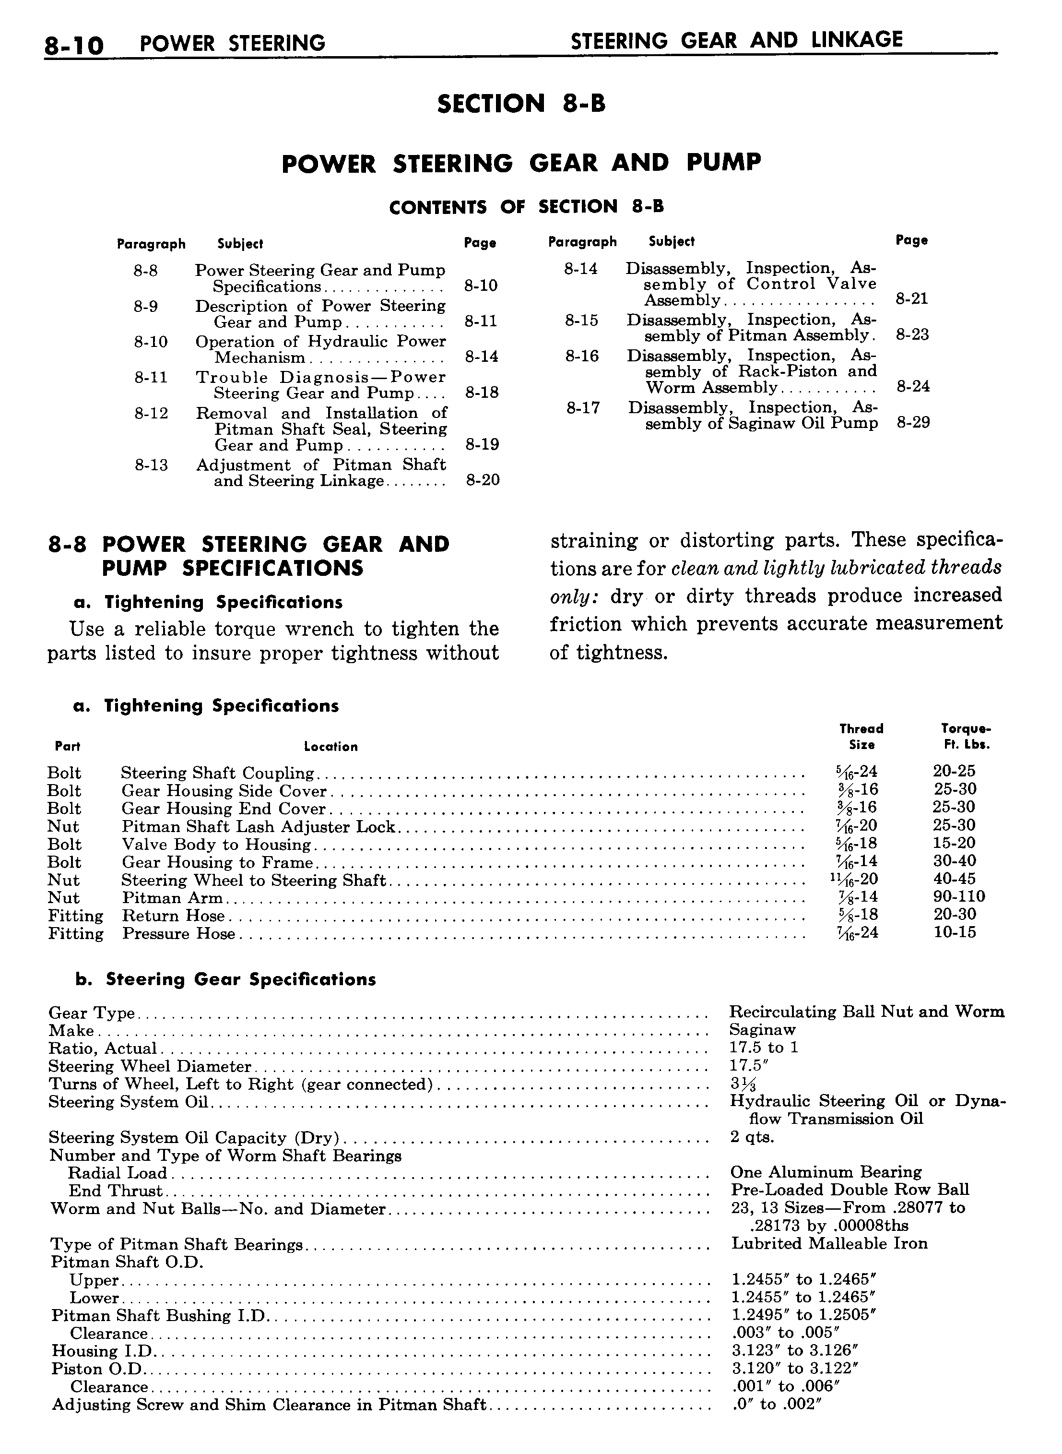 n_09 1957 Buick Shop Manual - Steering-010-010.jpg